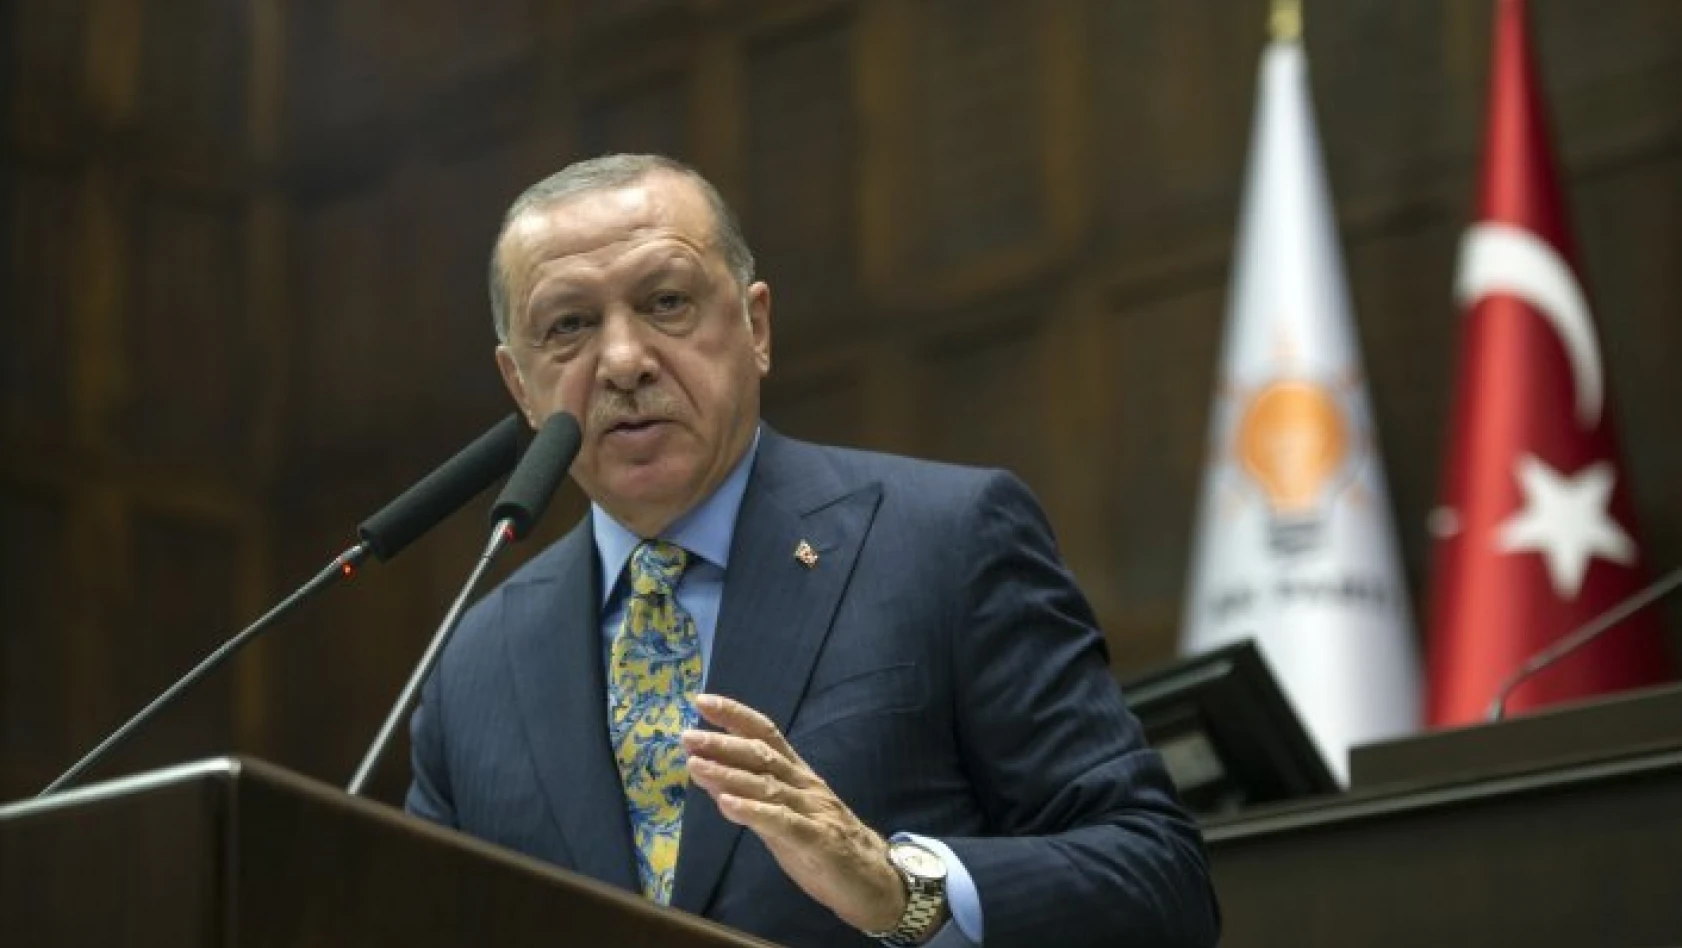 Cumhurbaşkanı Erdoğan'dan ittifak açıklaması! 'Herkes kendi yoluna'